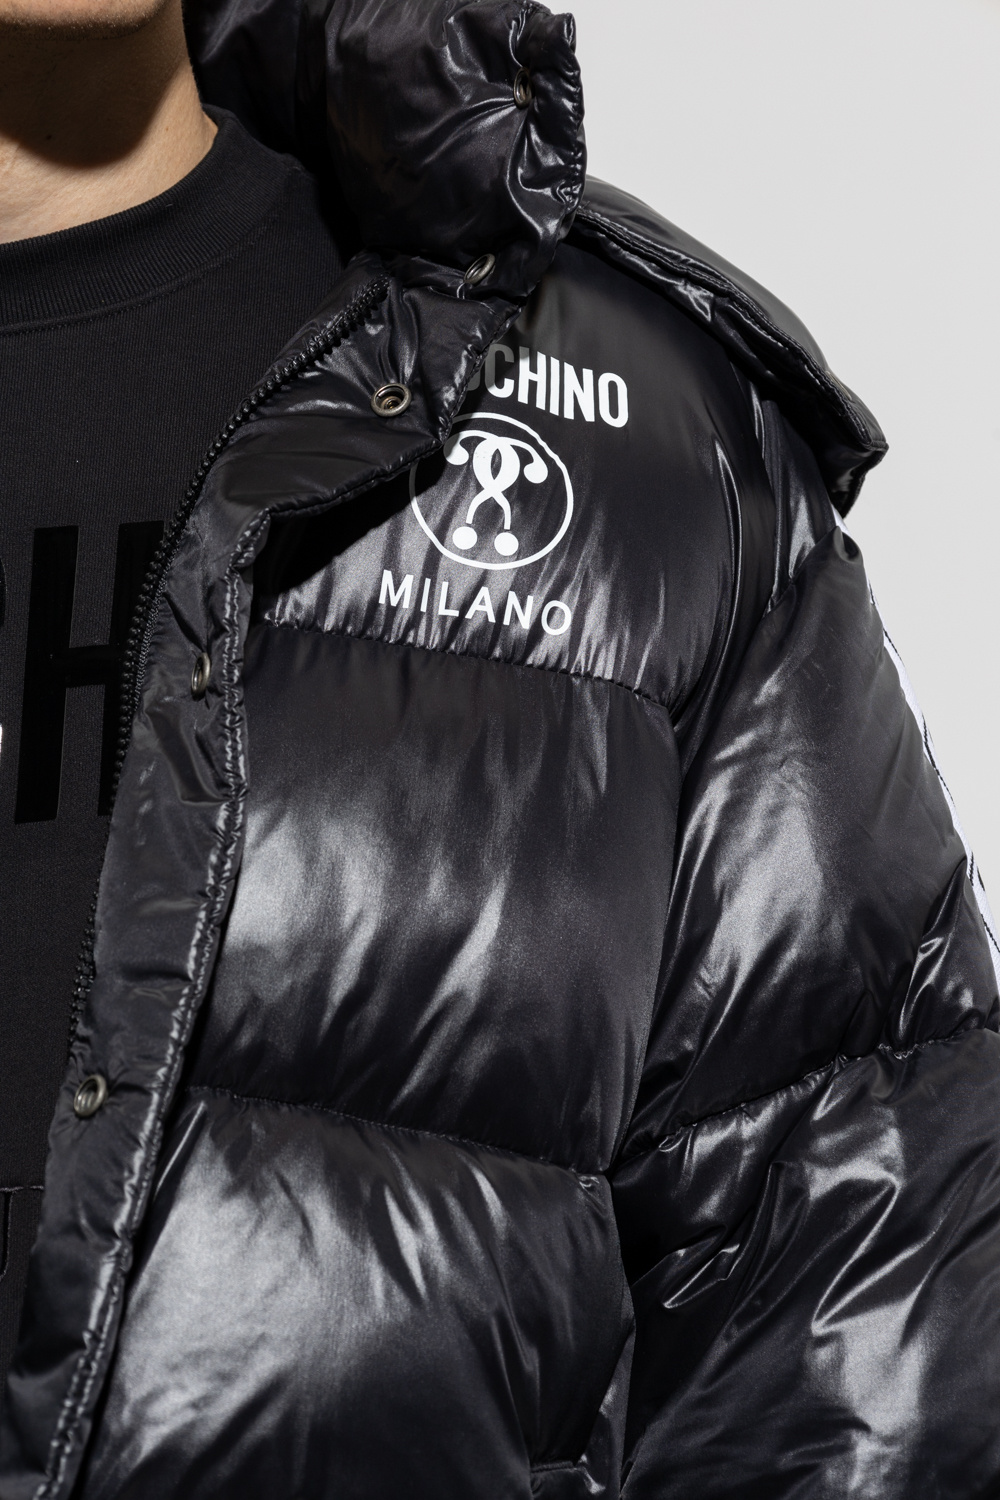 Moschino shanghai tang active tang collina jacket item